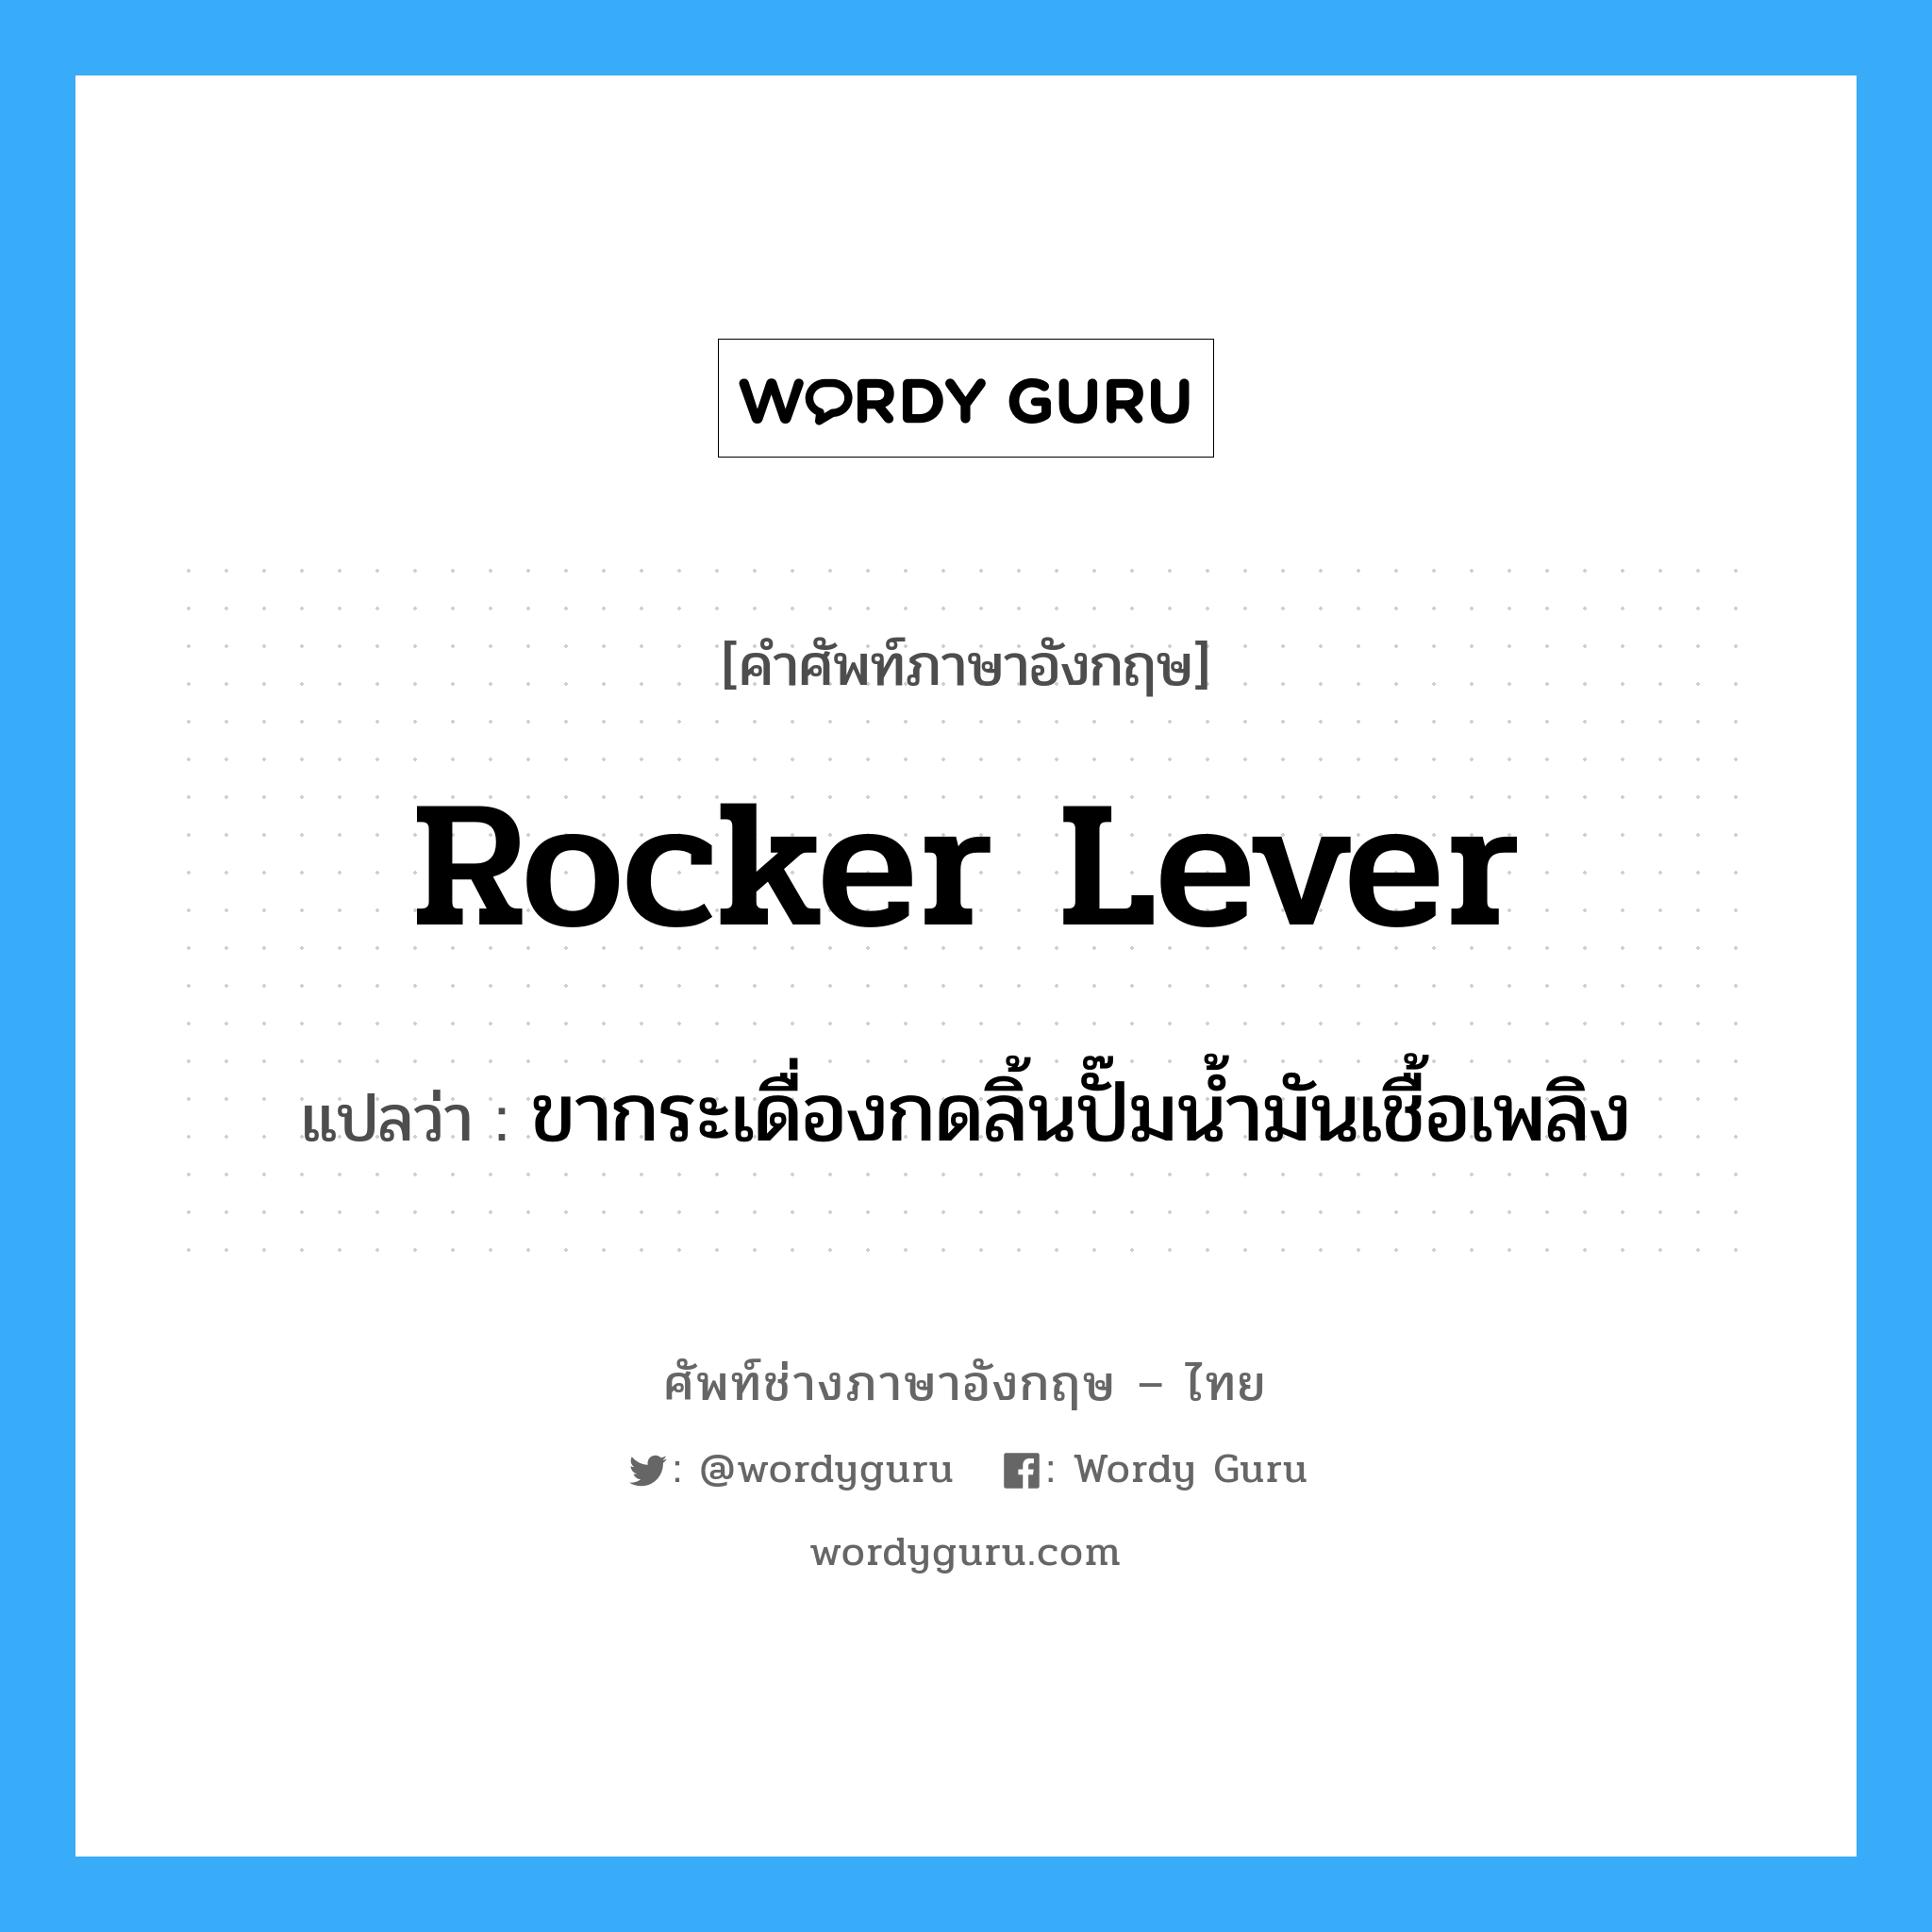 rocker lever แปลว่า?, คำศัพท์ช่างภาษาอังกฤษ - ไทย rocker lever คำศัพท์ภาษาอังกฤษ rocker lever แปลว่า ขากระเดื่องกดลิ้นปั๊มน้ำมันเชื้อเพลิง